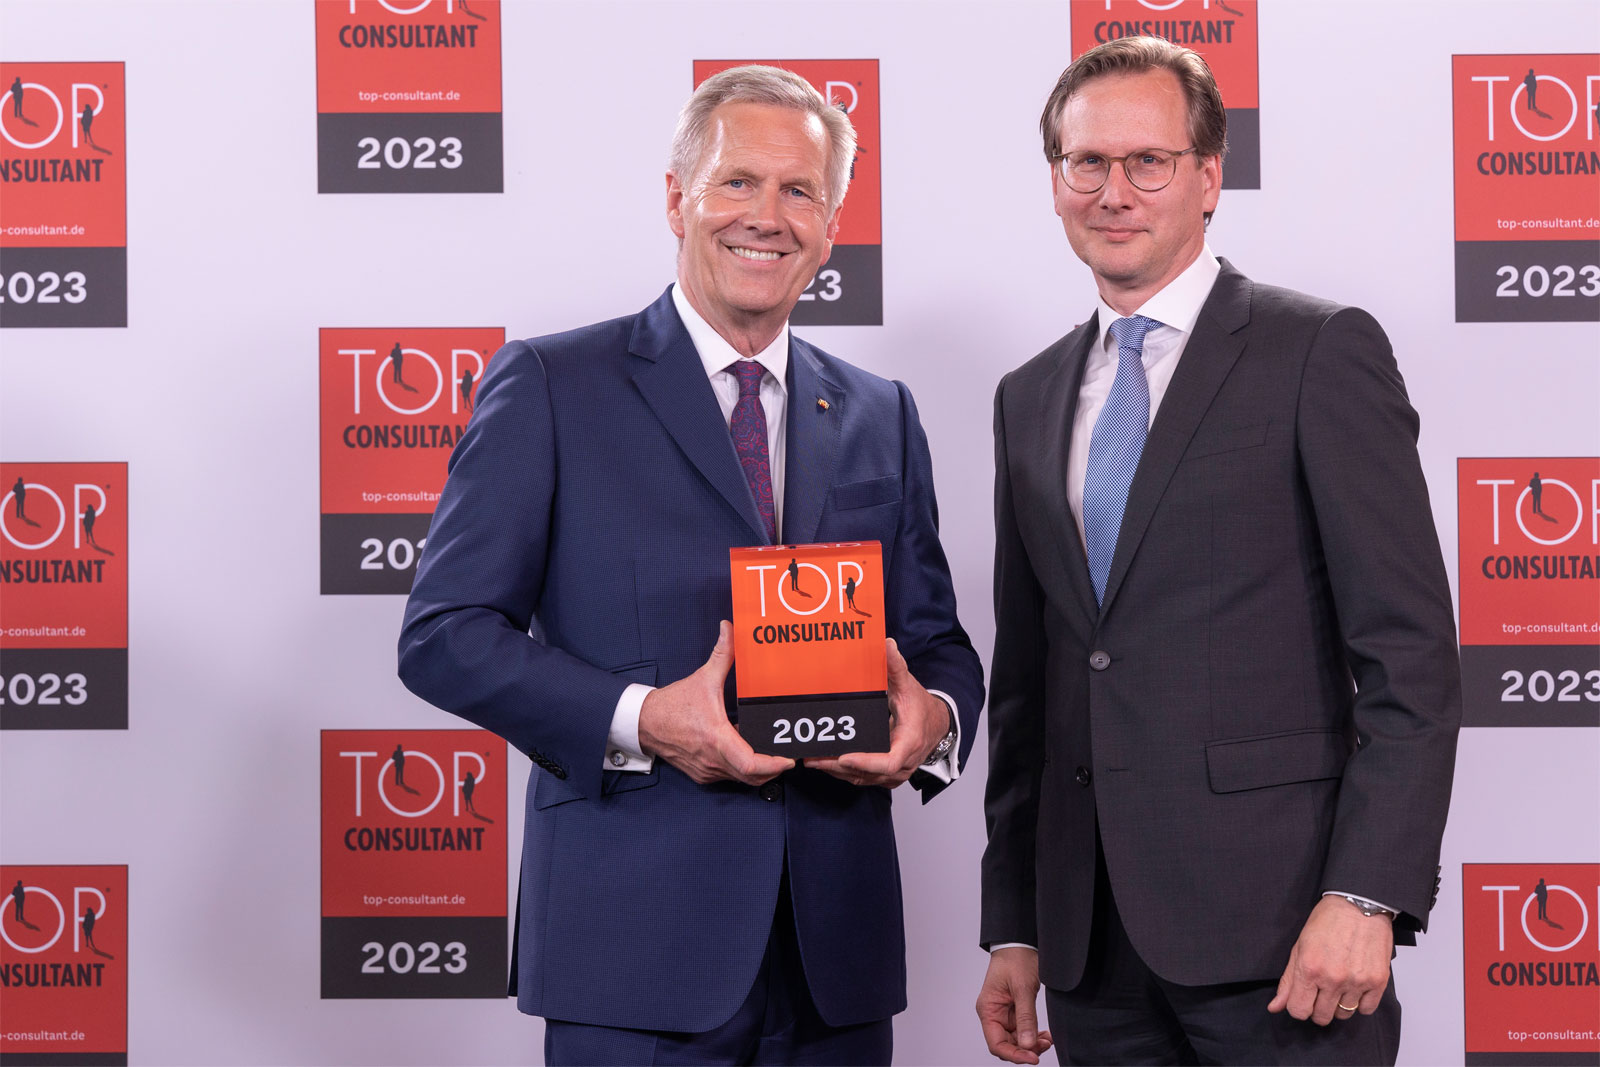 Auszeichnung zum TOP CONSULTANT 2023 - Christian Wulff gratuliert Alexander von Buzay